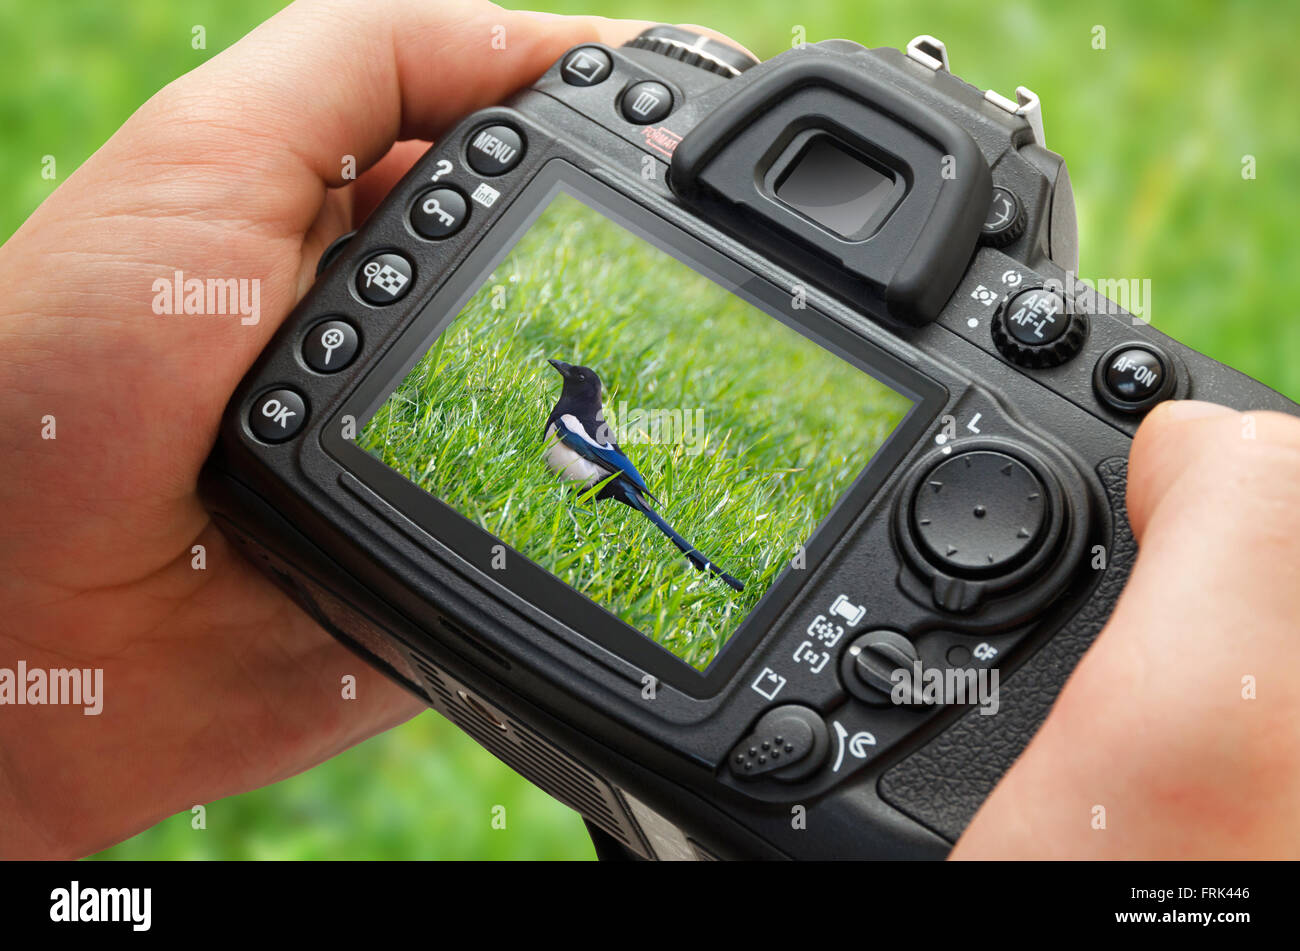 Foto di uccello sul display della fotocamera durante l'hobby della fotografia in natura Foto Stock